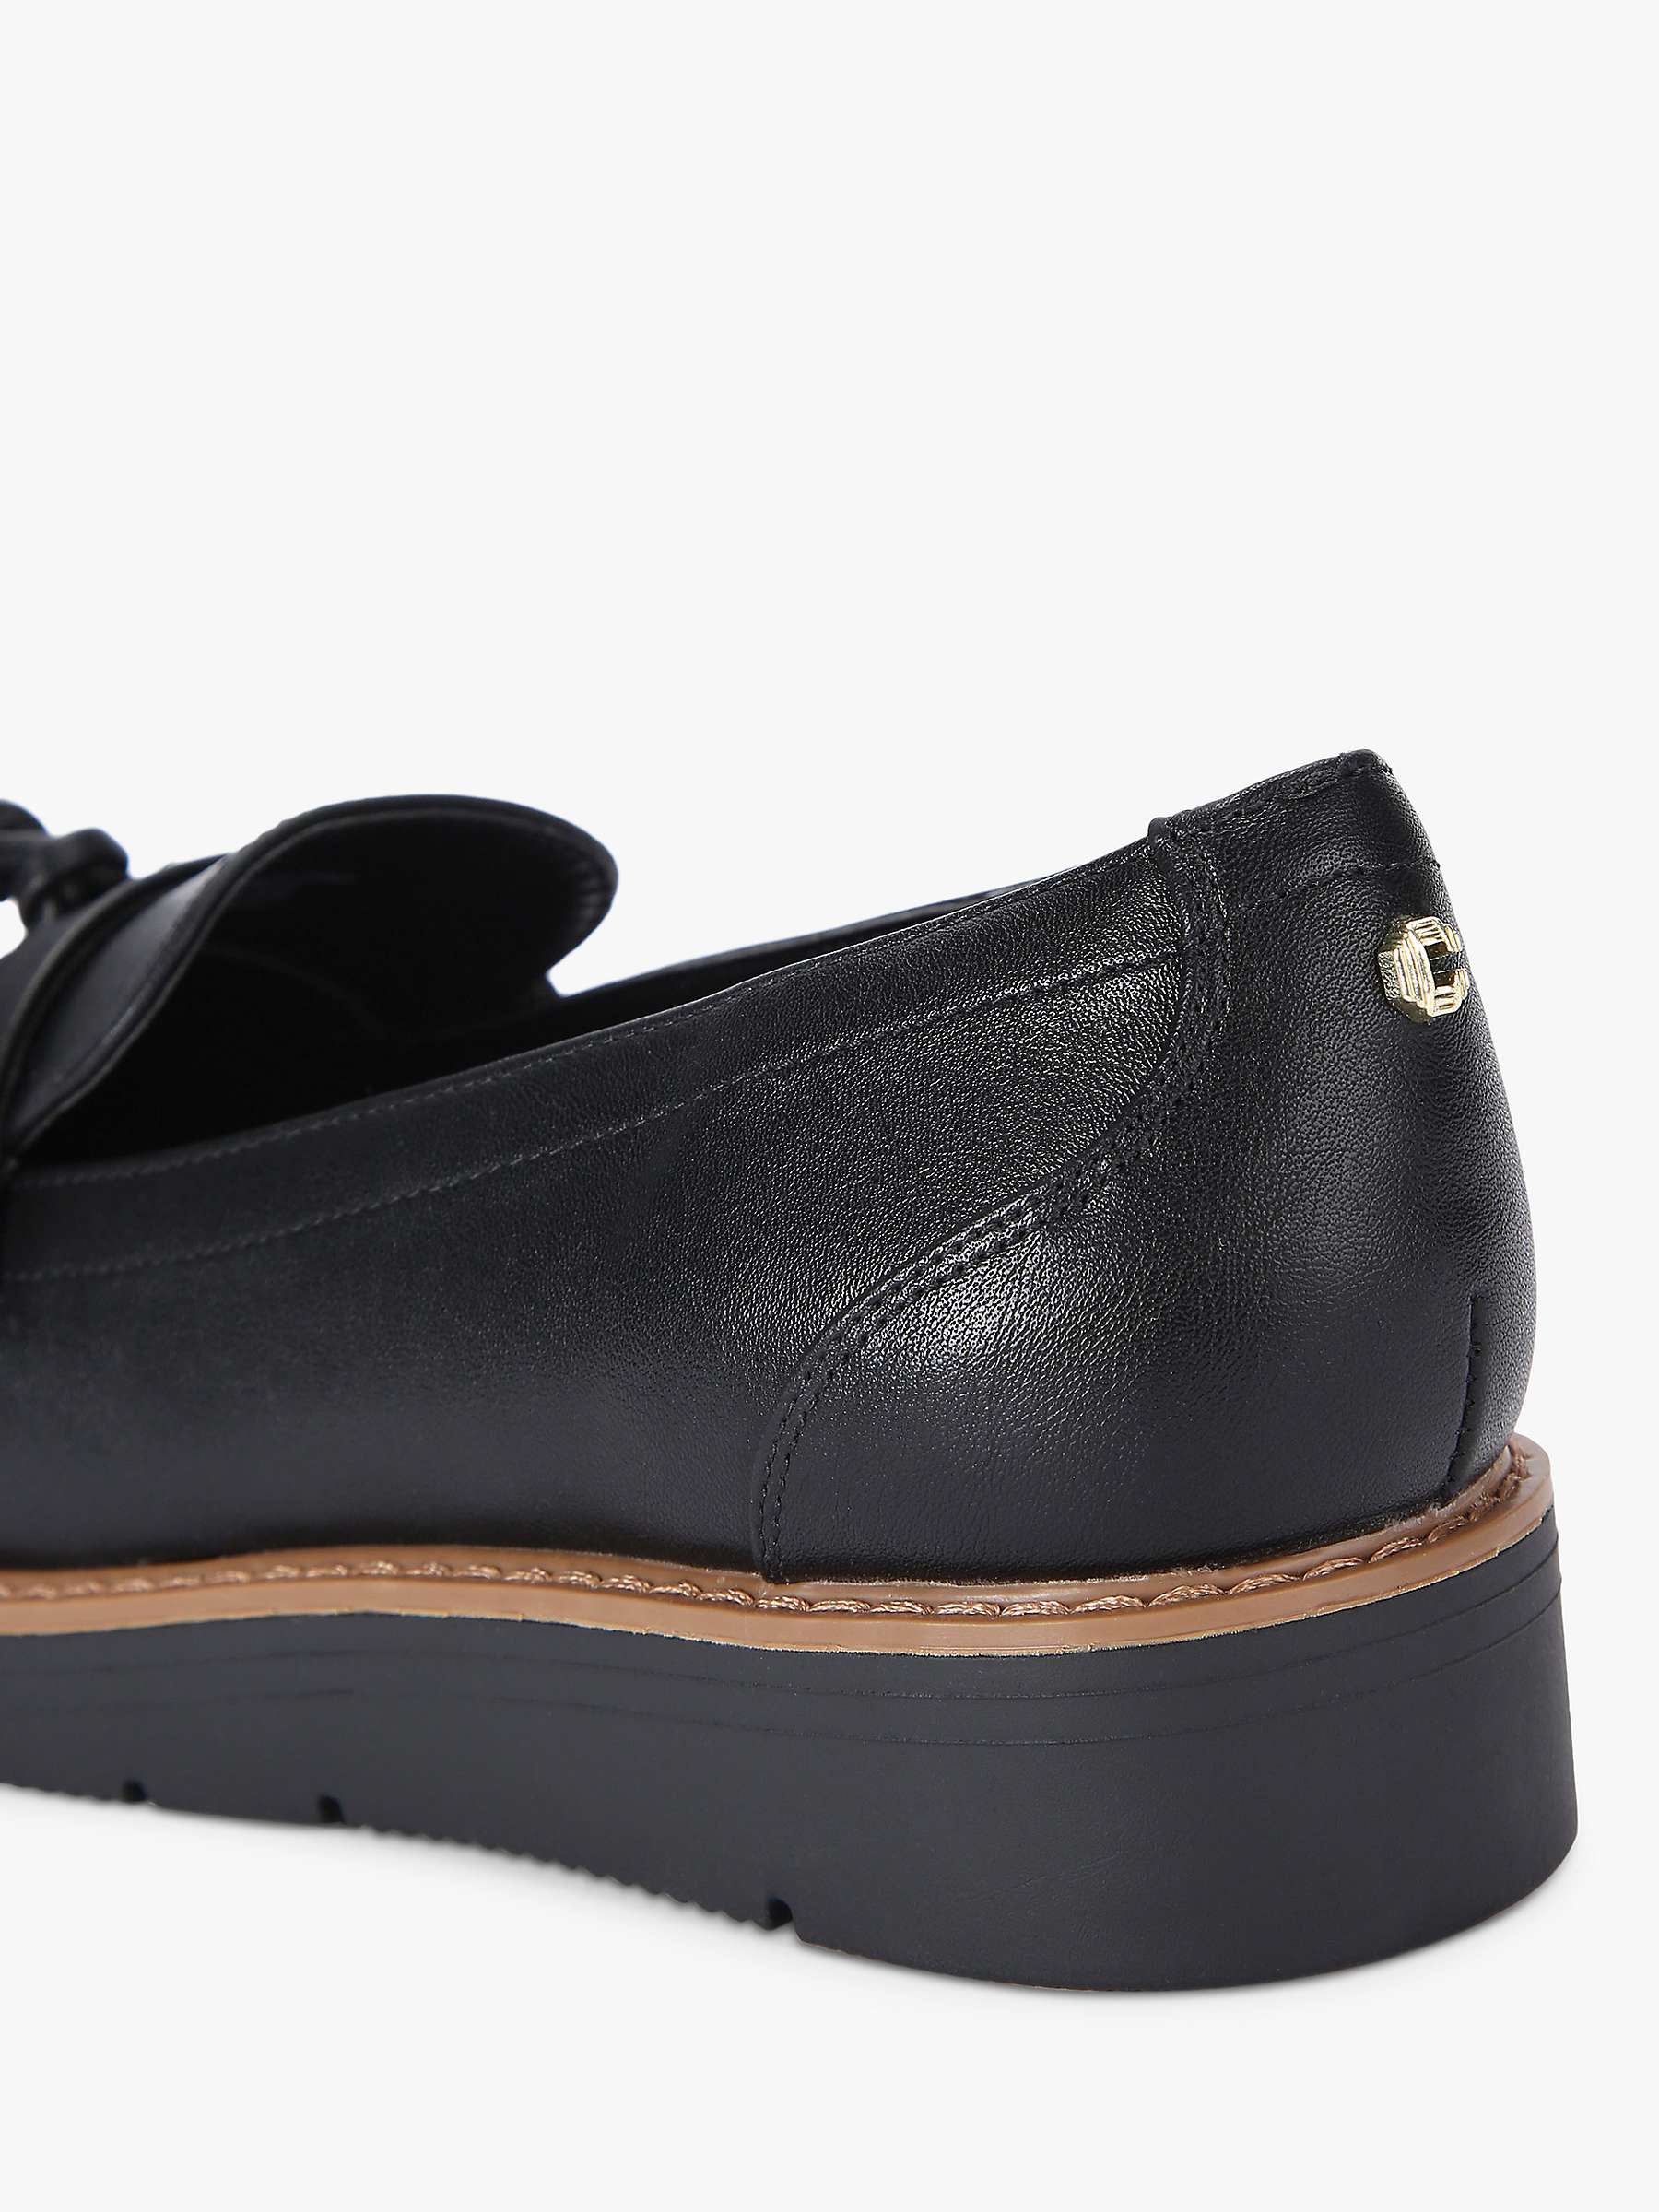 Buy Carvela Sky Tassel Slip-On Loafers, Black Online at johnlewis.com